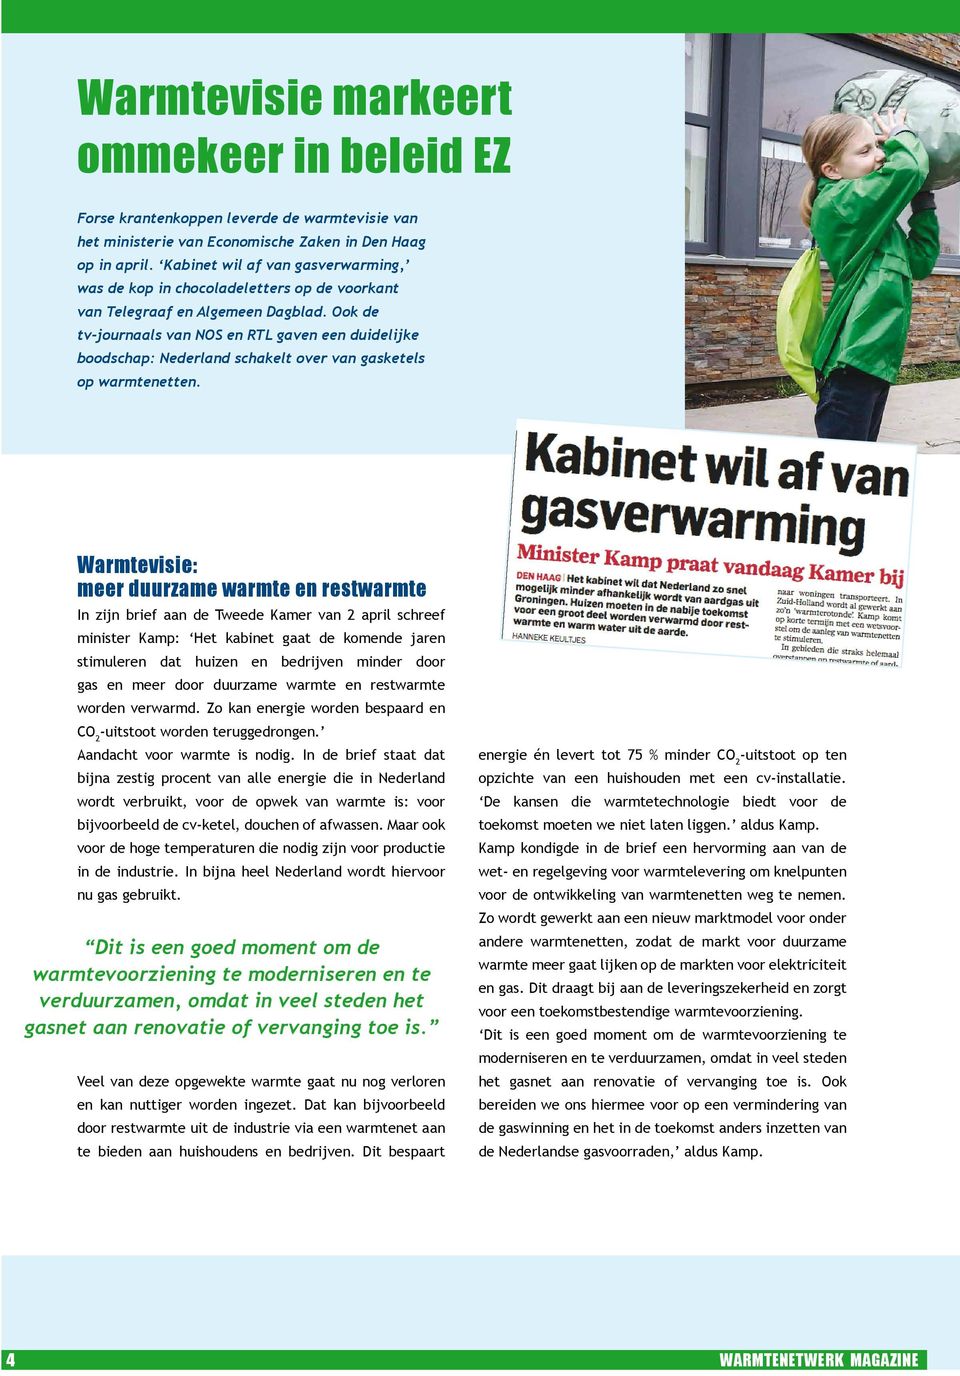 Ook de tv-journaals van NOS en RTL gaven een duidelijke boodschap: Nederland schakelt over van gasketels op warmtenetten.